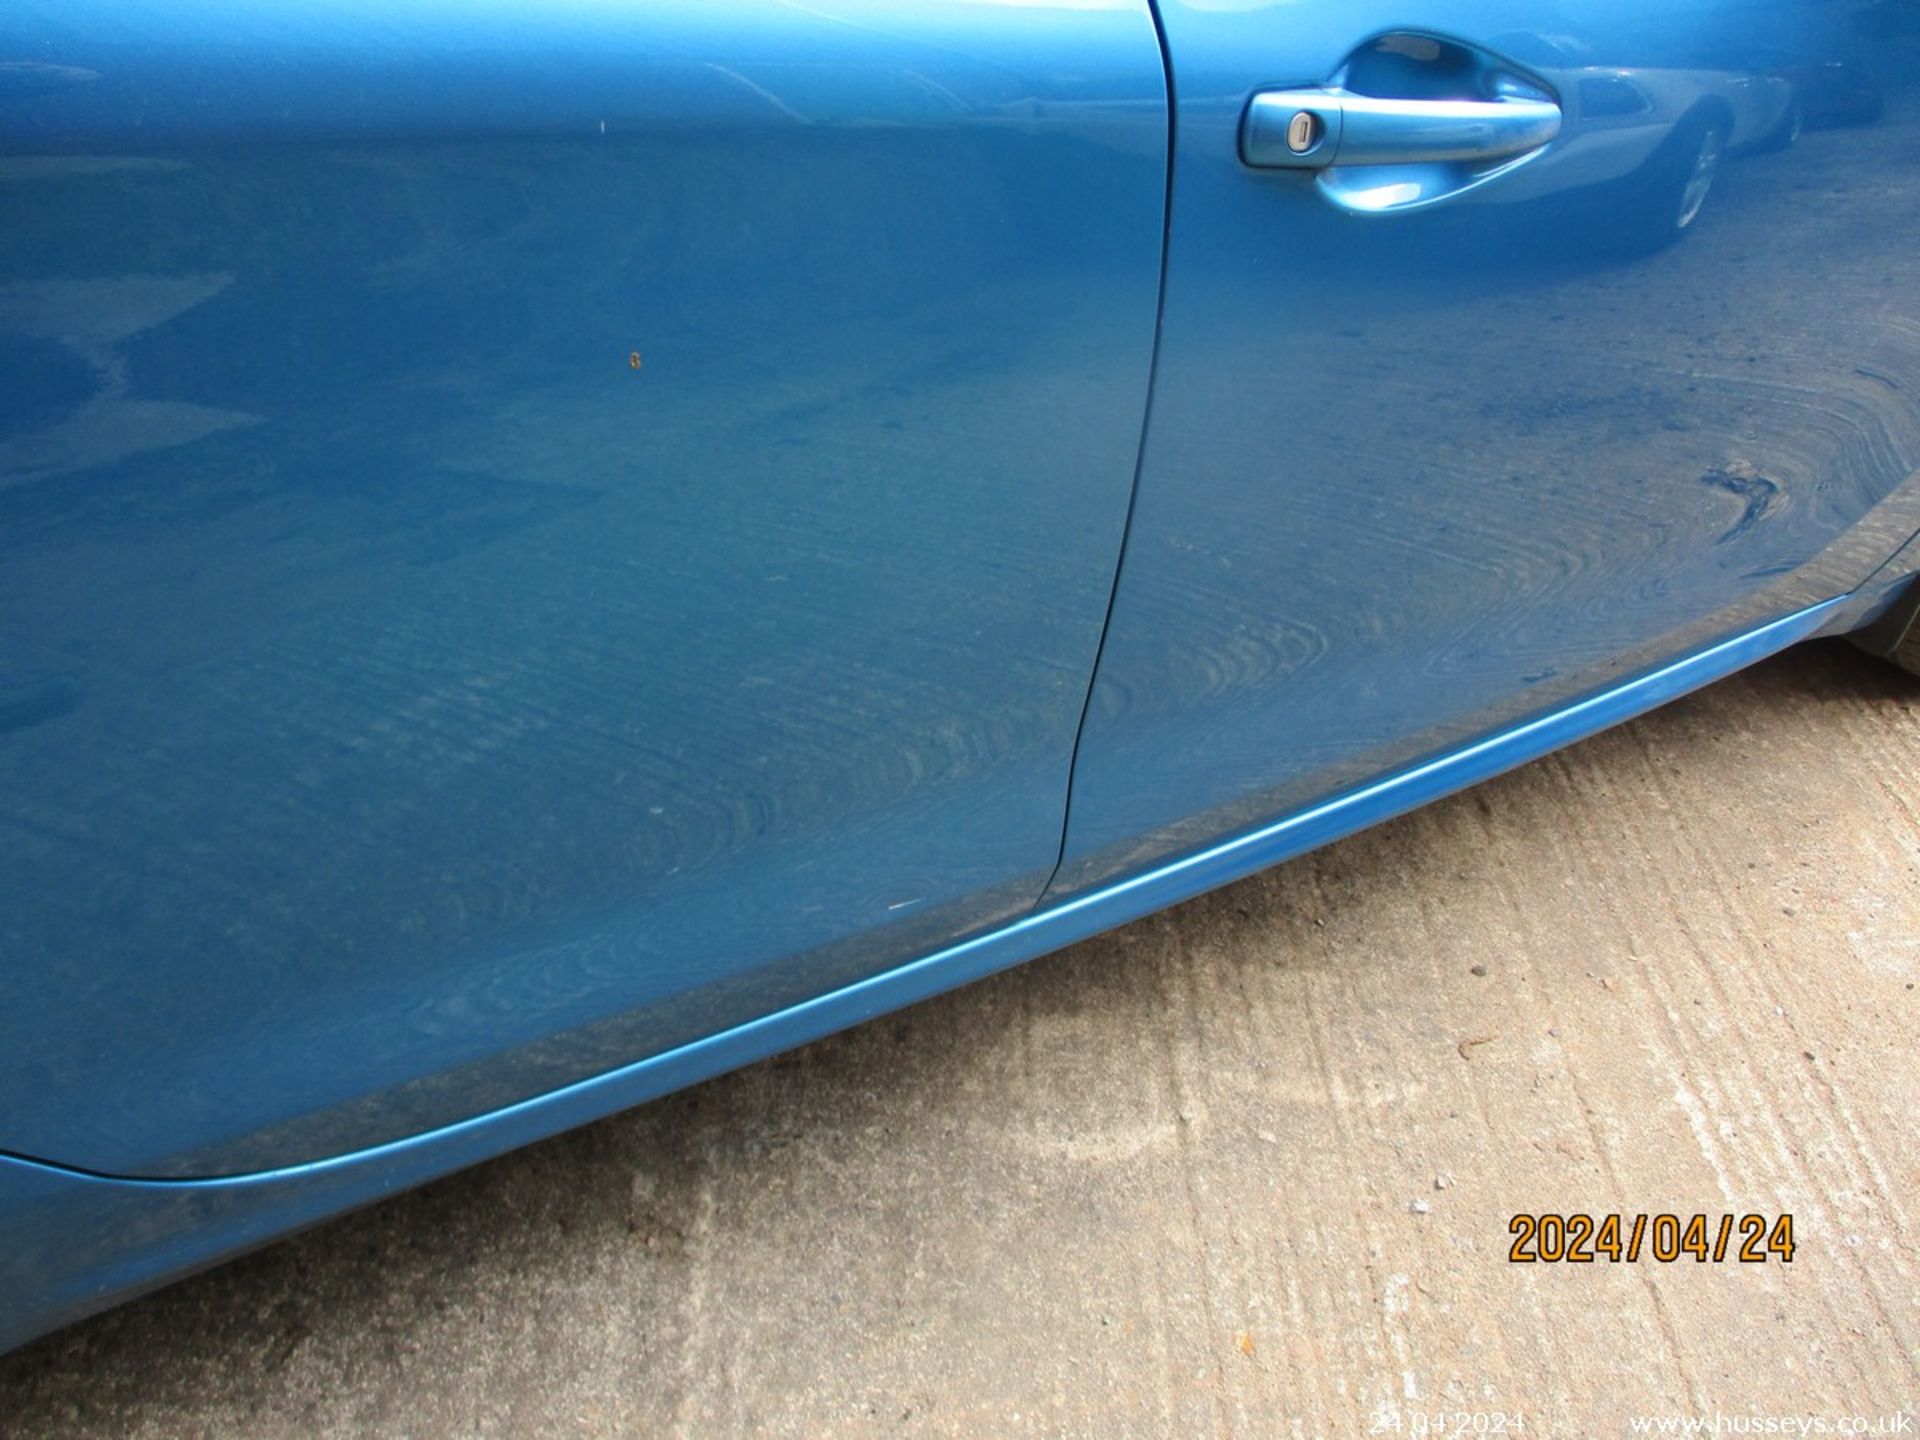 13/62 PEUGEOT 208 ACCESS PLUS - 1199cc 5dr Hatchback (Blue, 83k) - Image 16 of 18